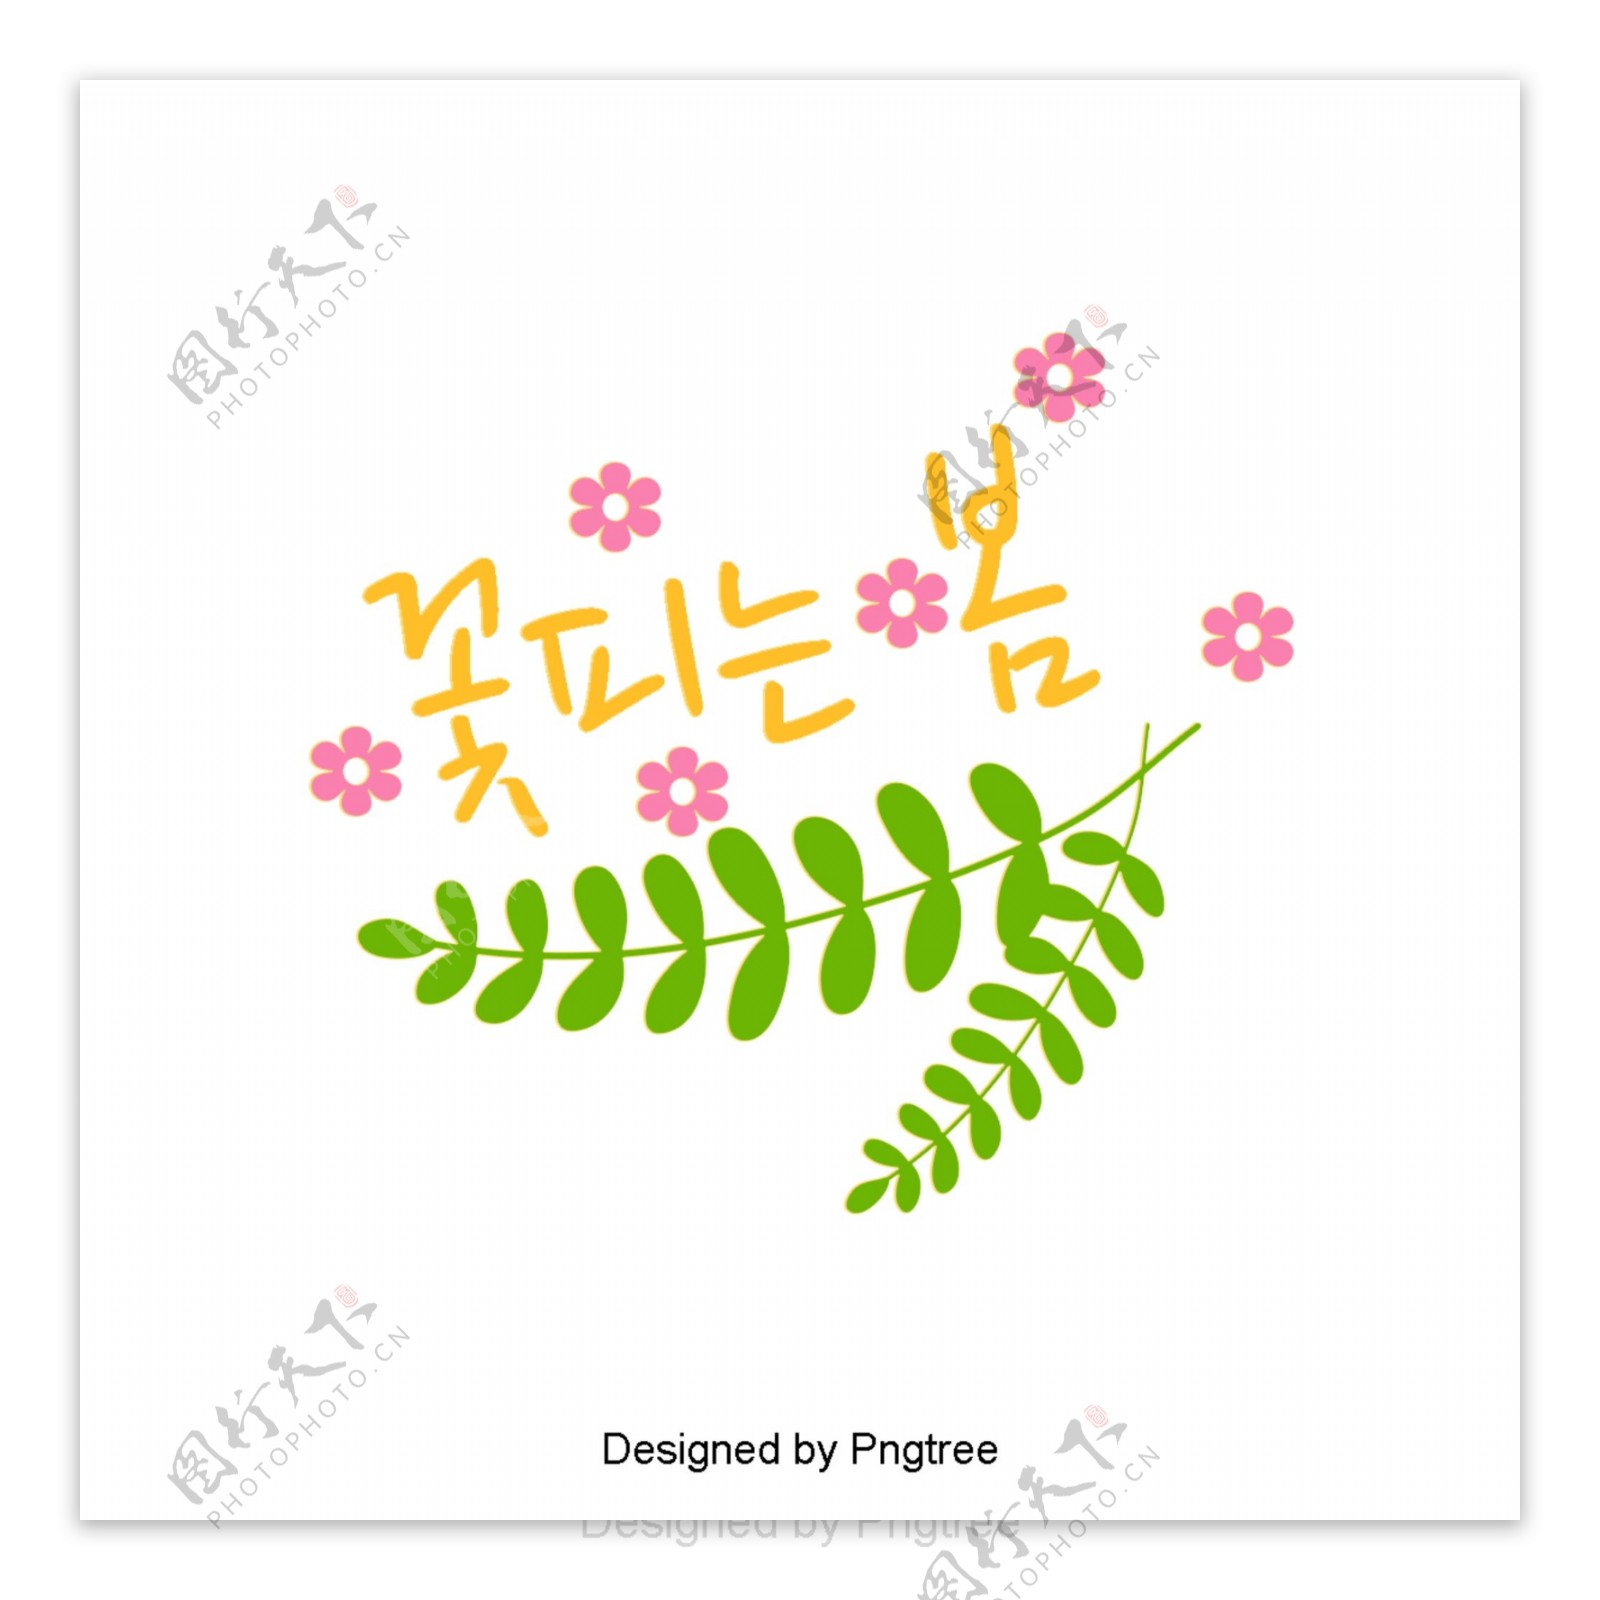 春天的花朵绽放绿色和粉红色的花朵美丽的字体设计